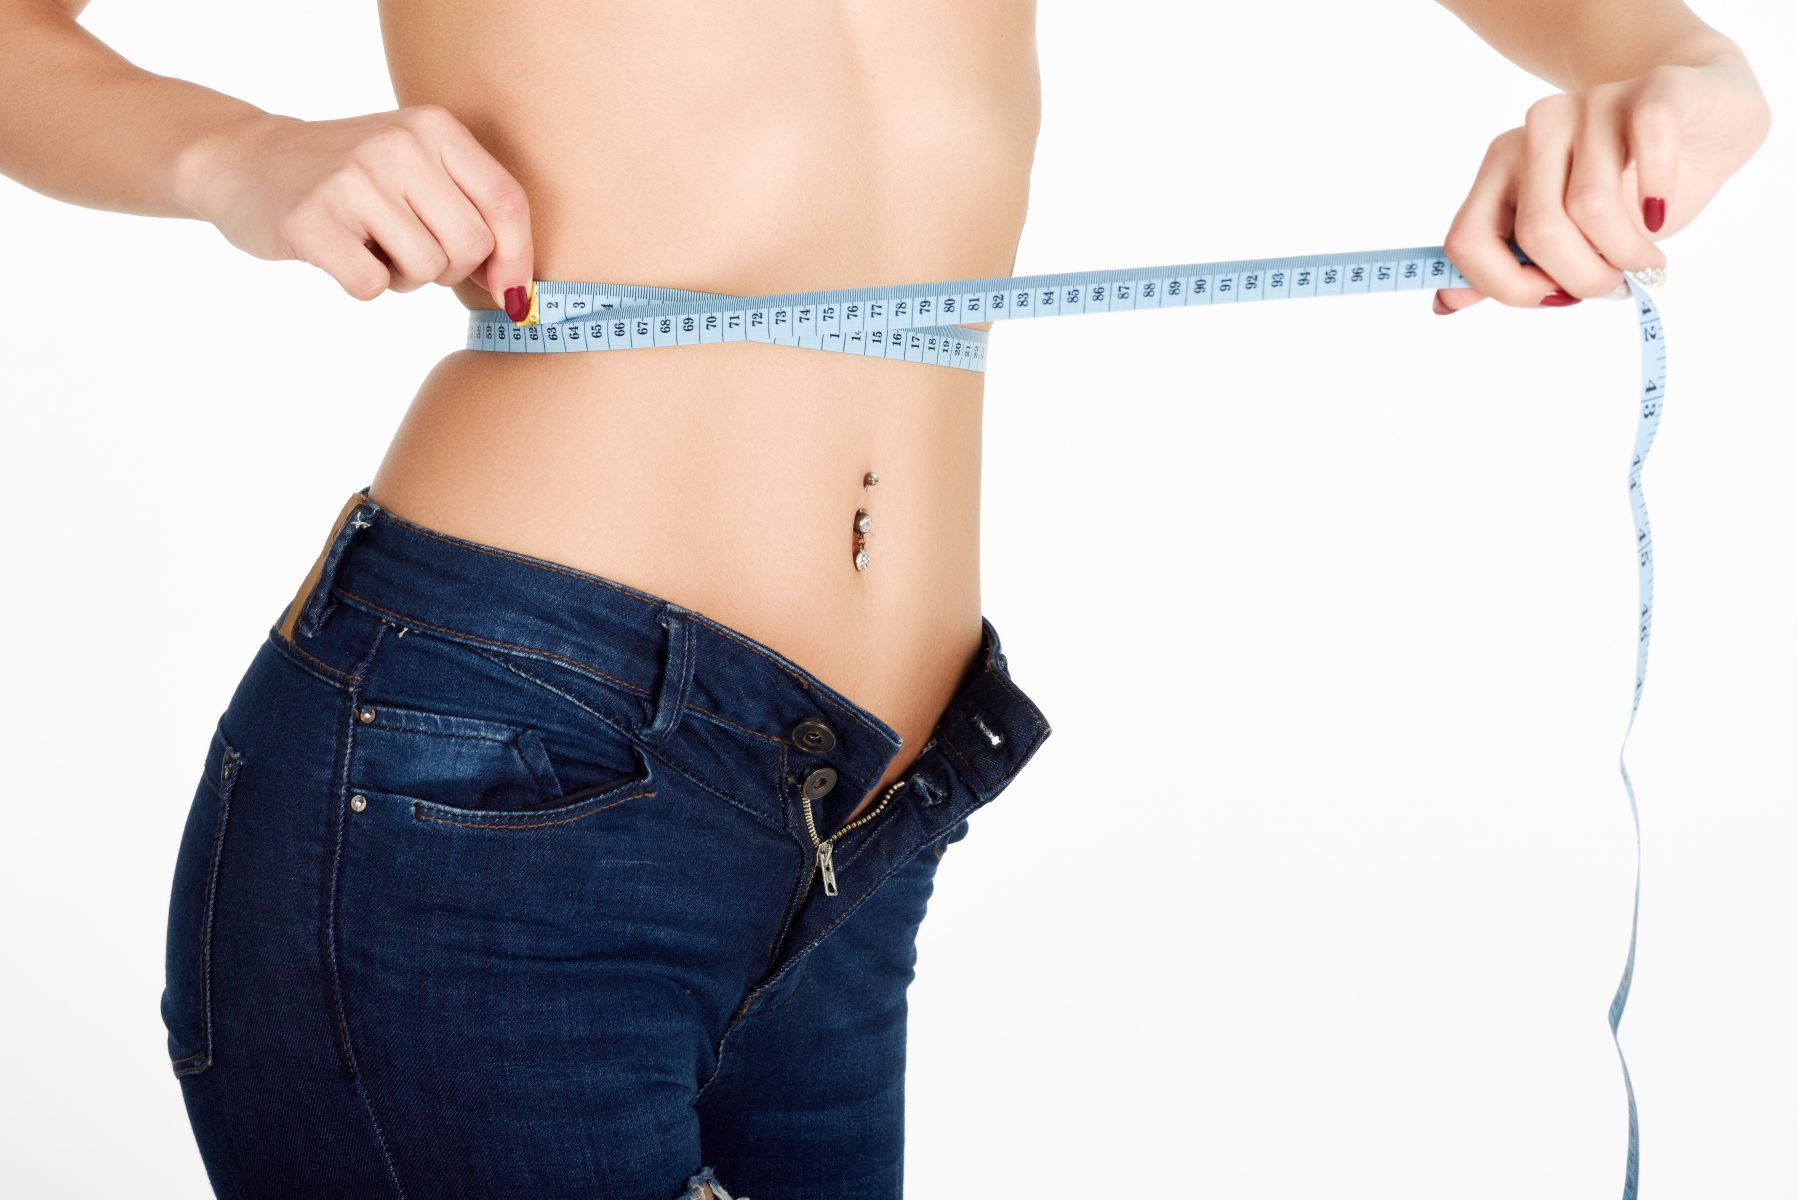 per didelis troškulys dažnas šlapinimasis svorio kritimas svorio netekimas riebalų perteklių